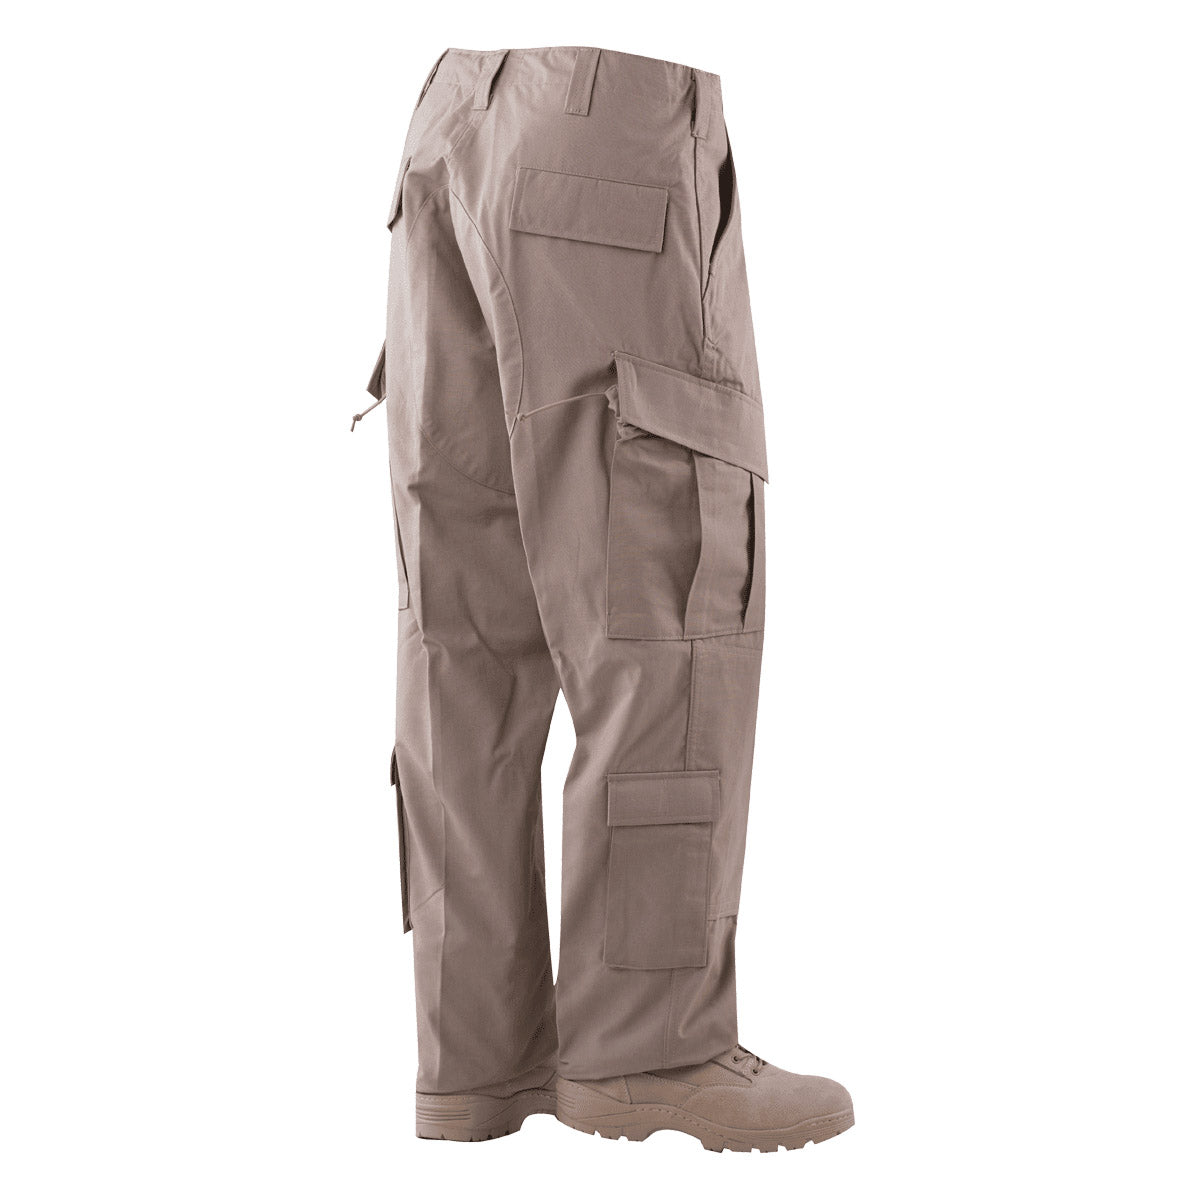 Tru-Spec Tactical Response Uniform Pants-Tac Essentials